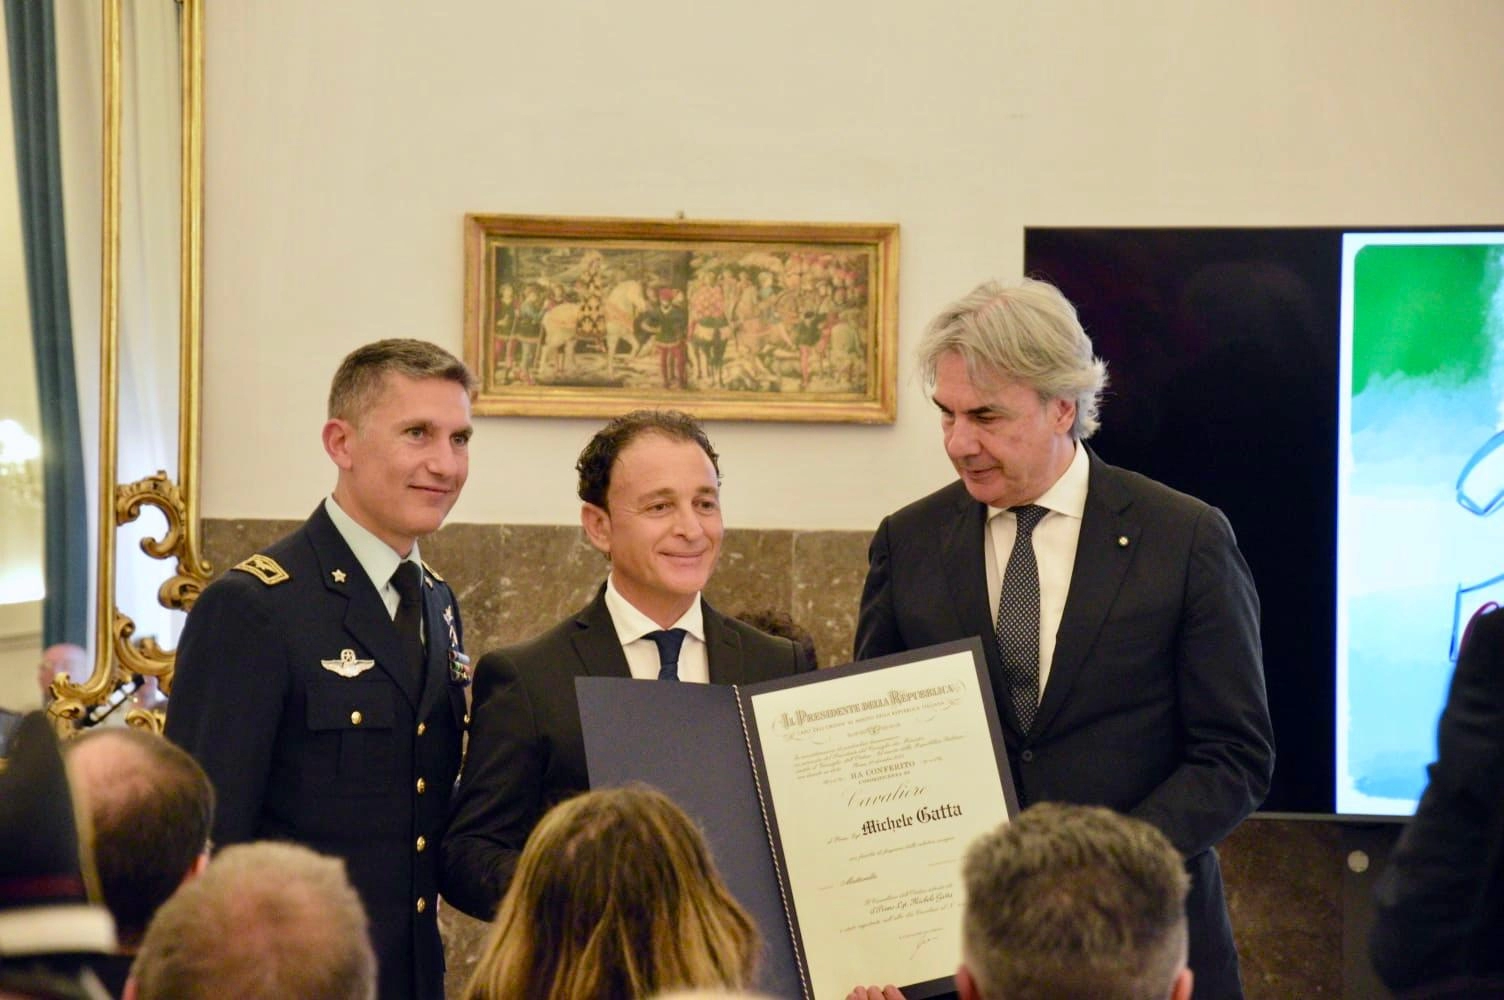 Al manfredoniano Primo Luogotenente Michele Gatta onorificenza dell'Ordine al Merito della Repubblica Italiana